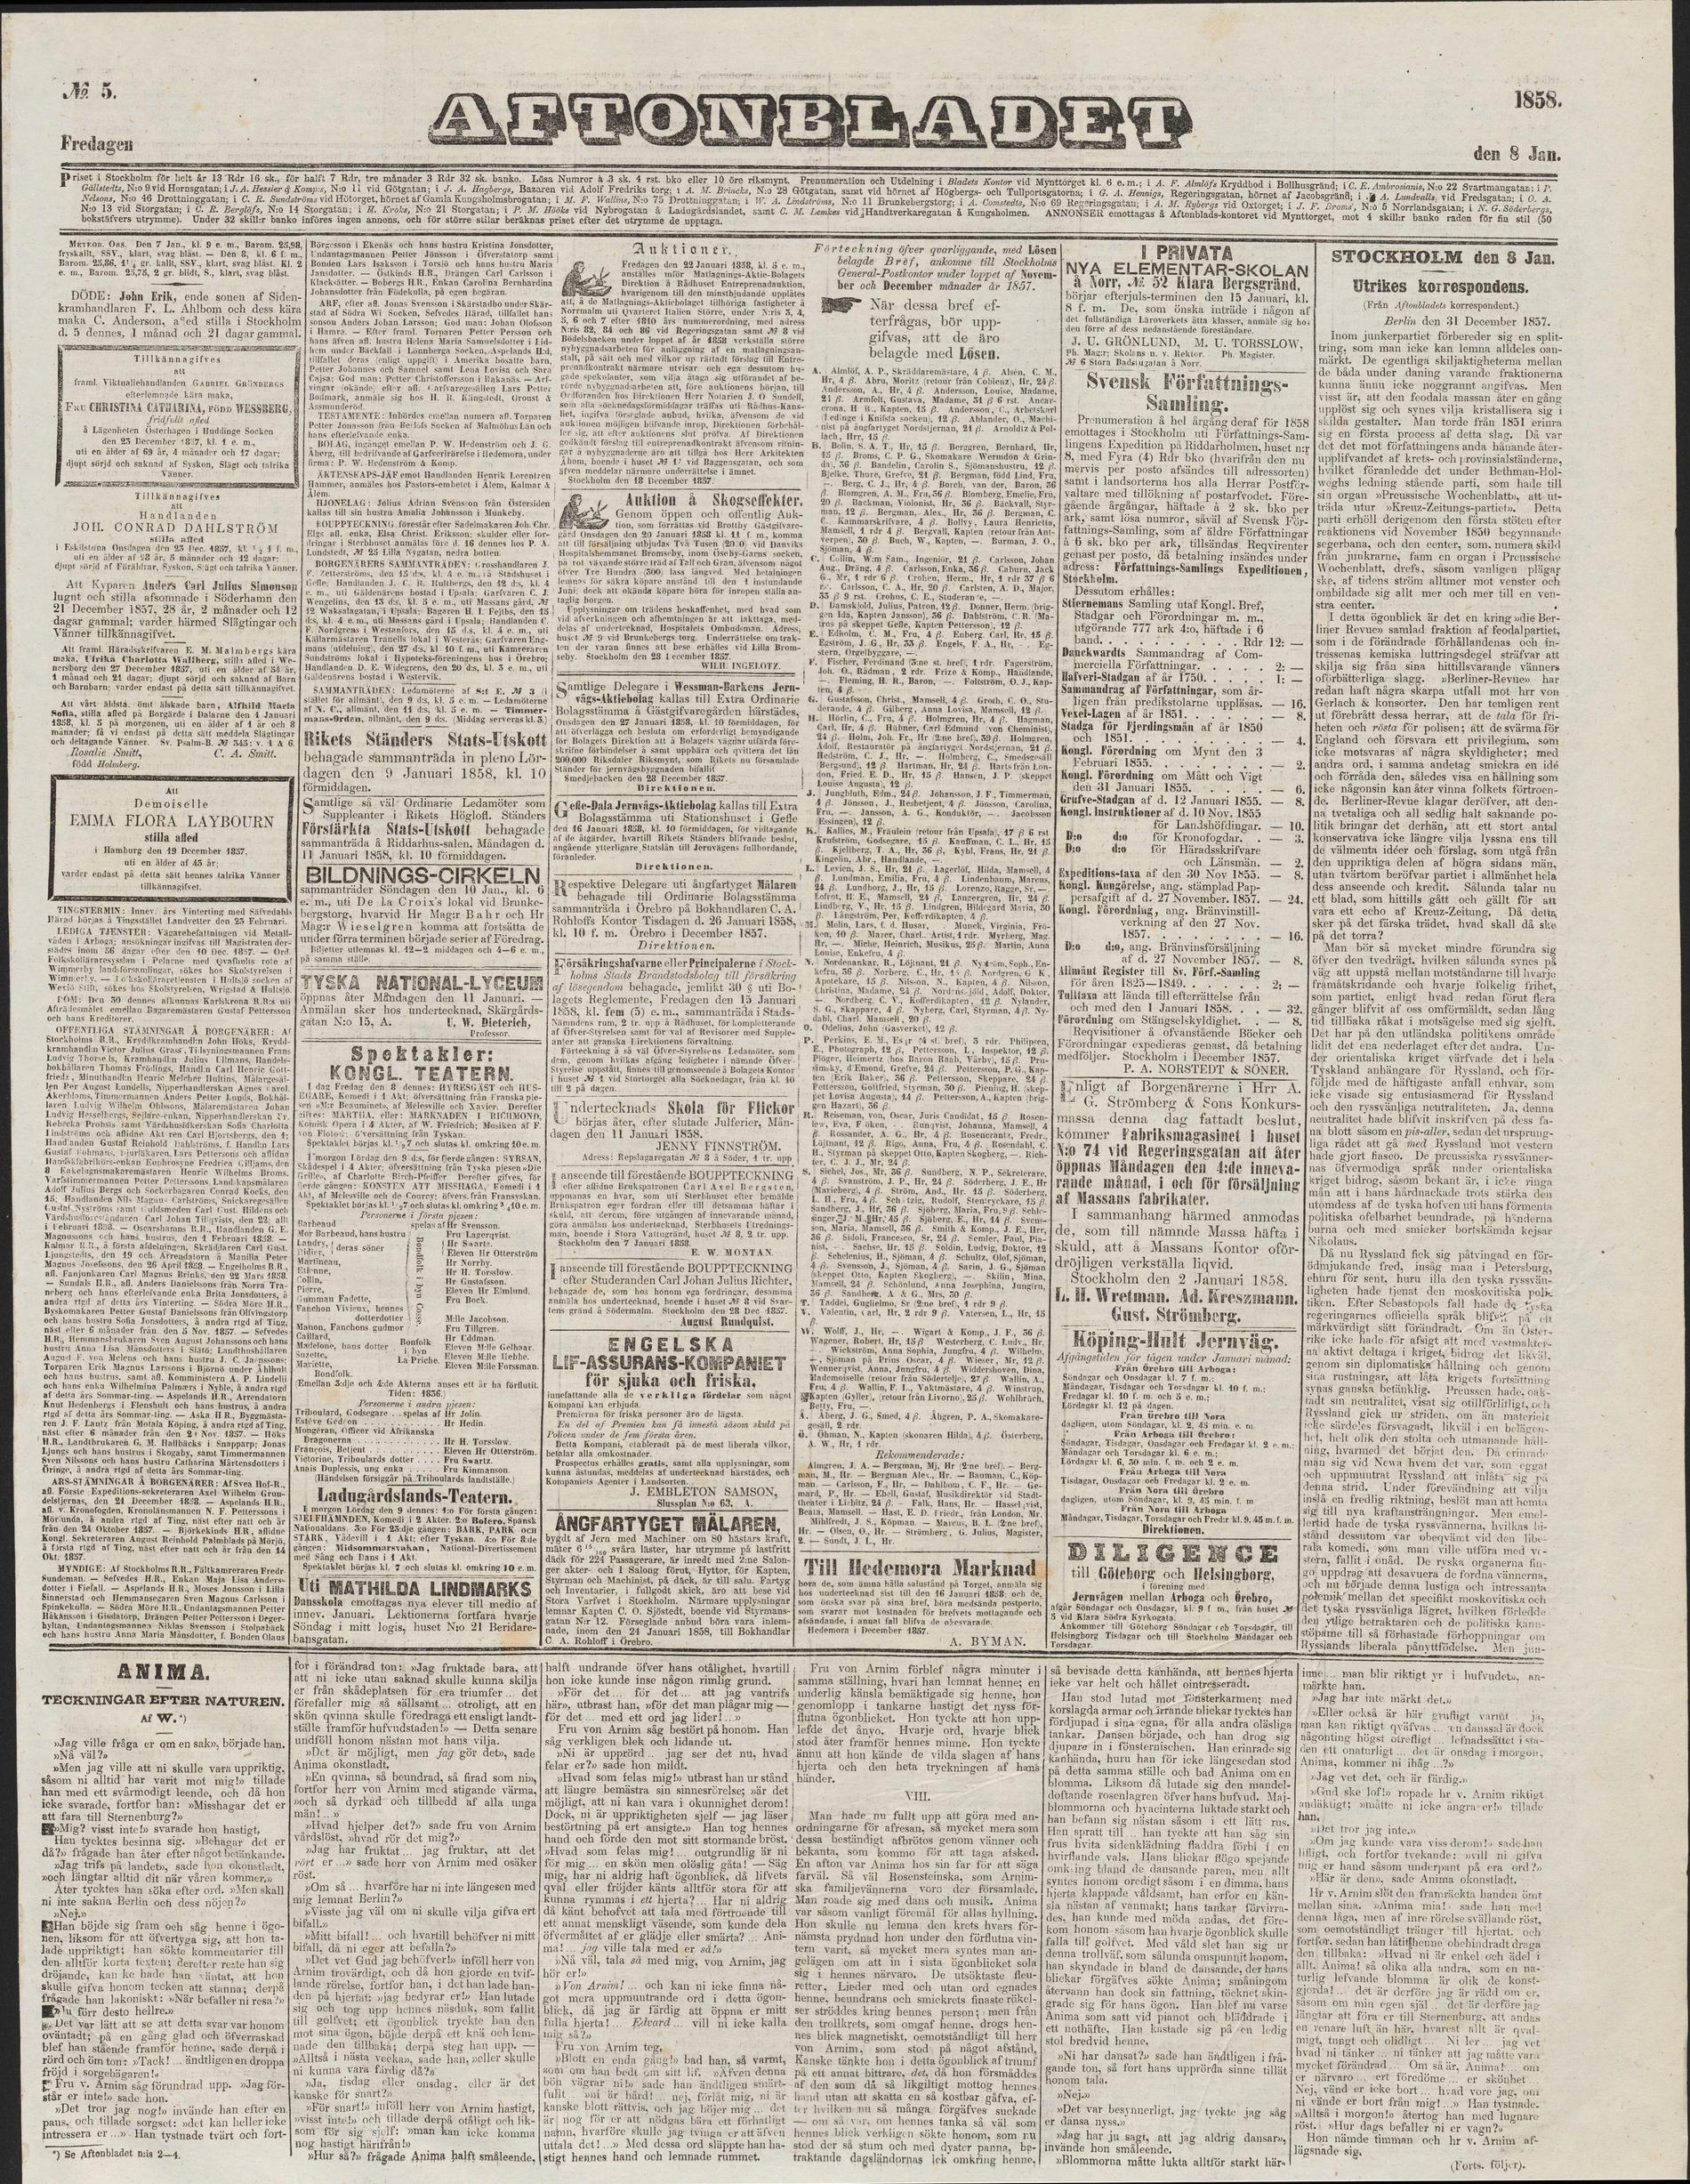 Aftonbladet, 8 januari 1858